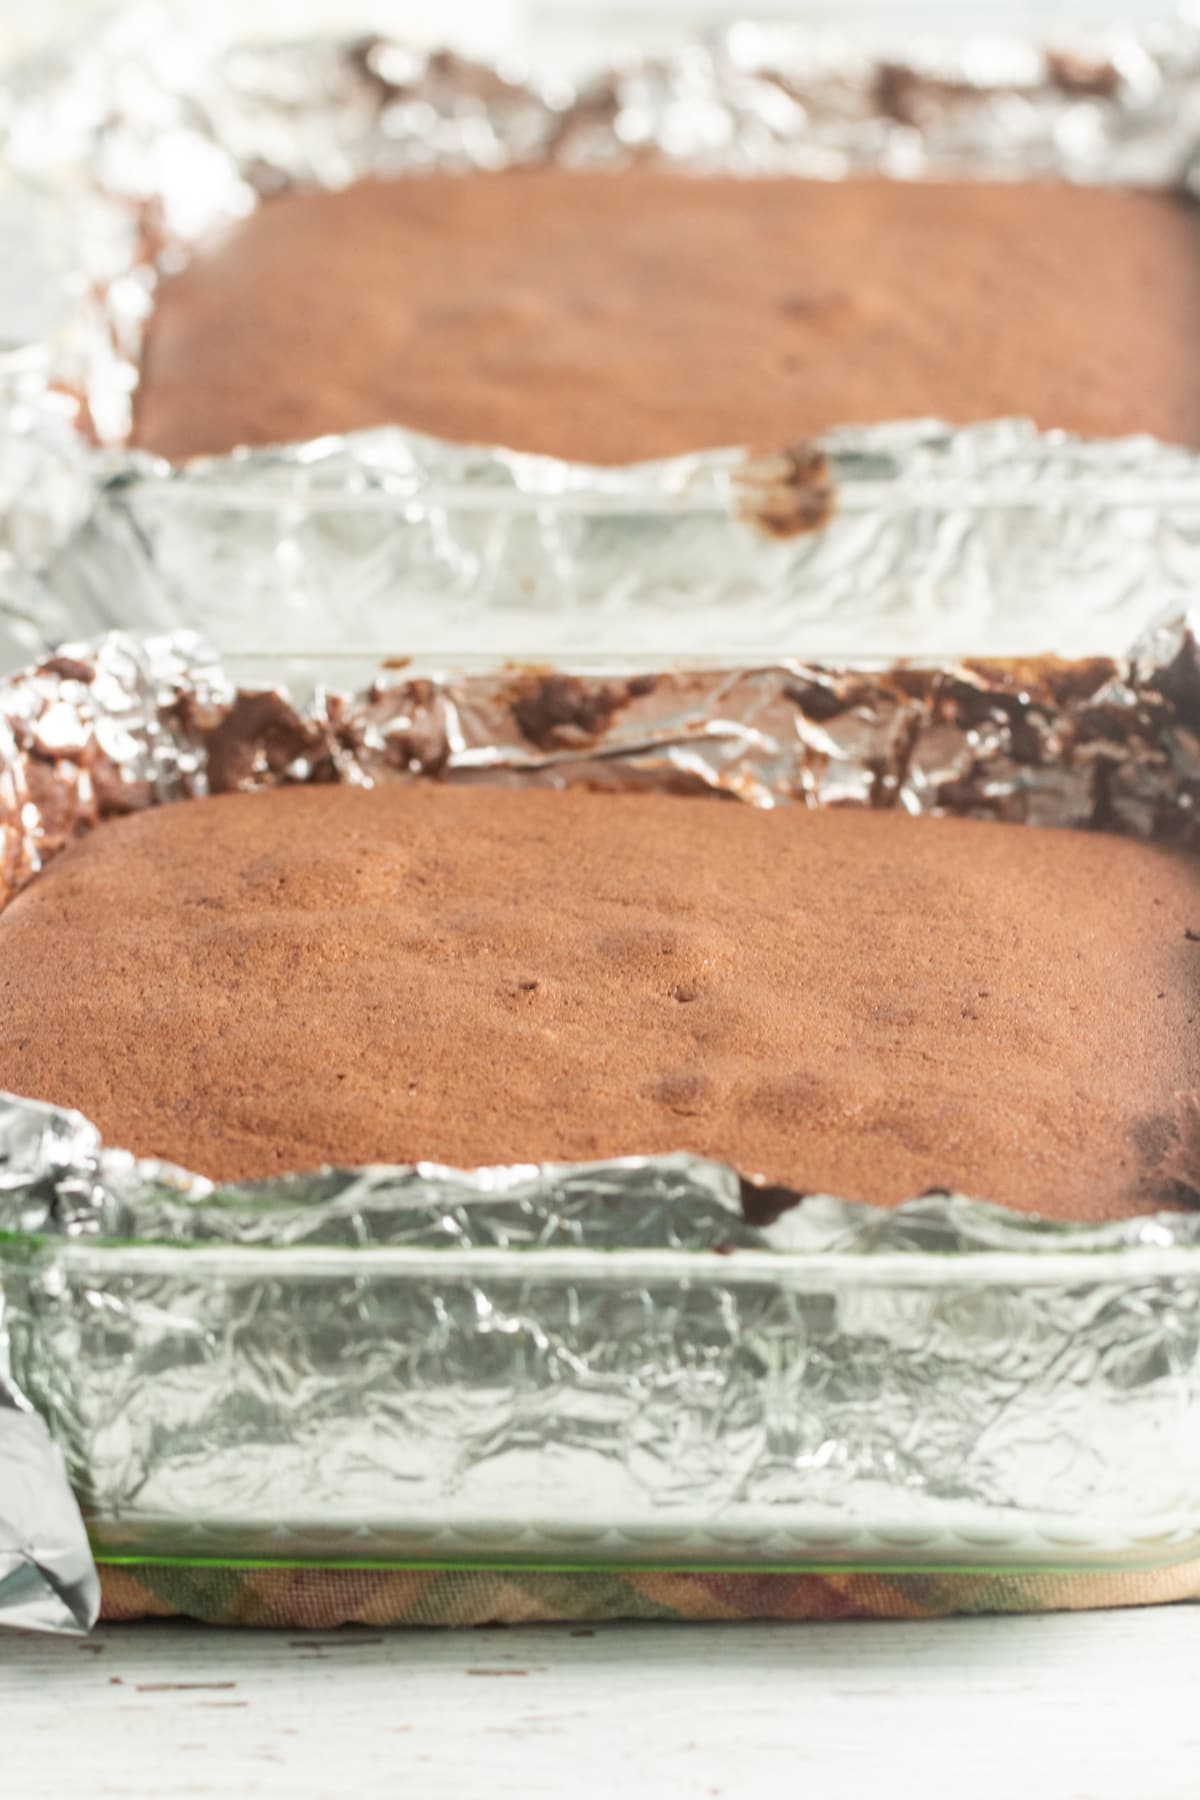 Batter for Mississippi Mud Cake in pans